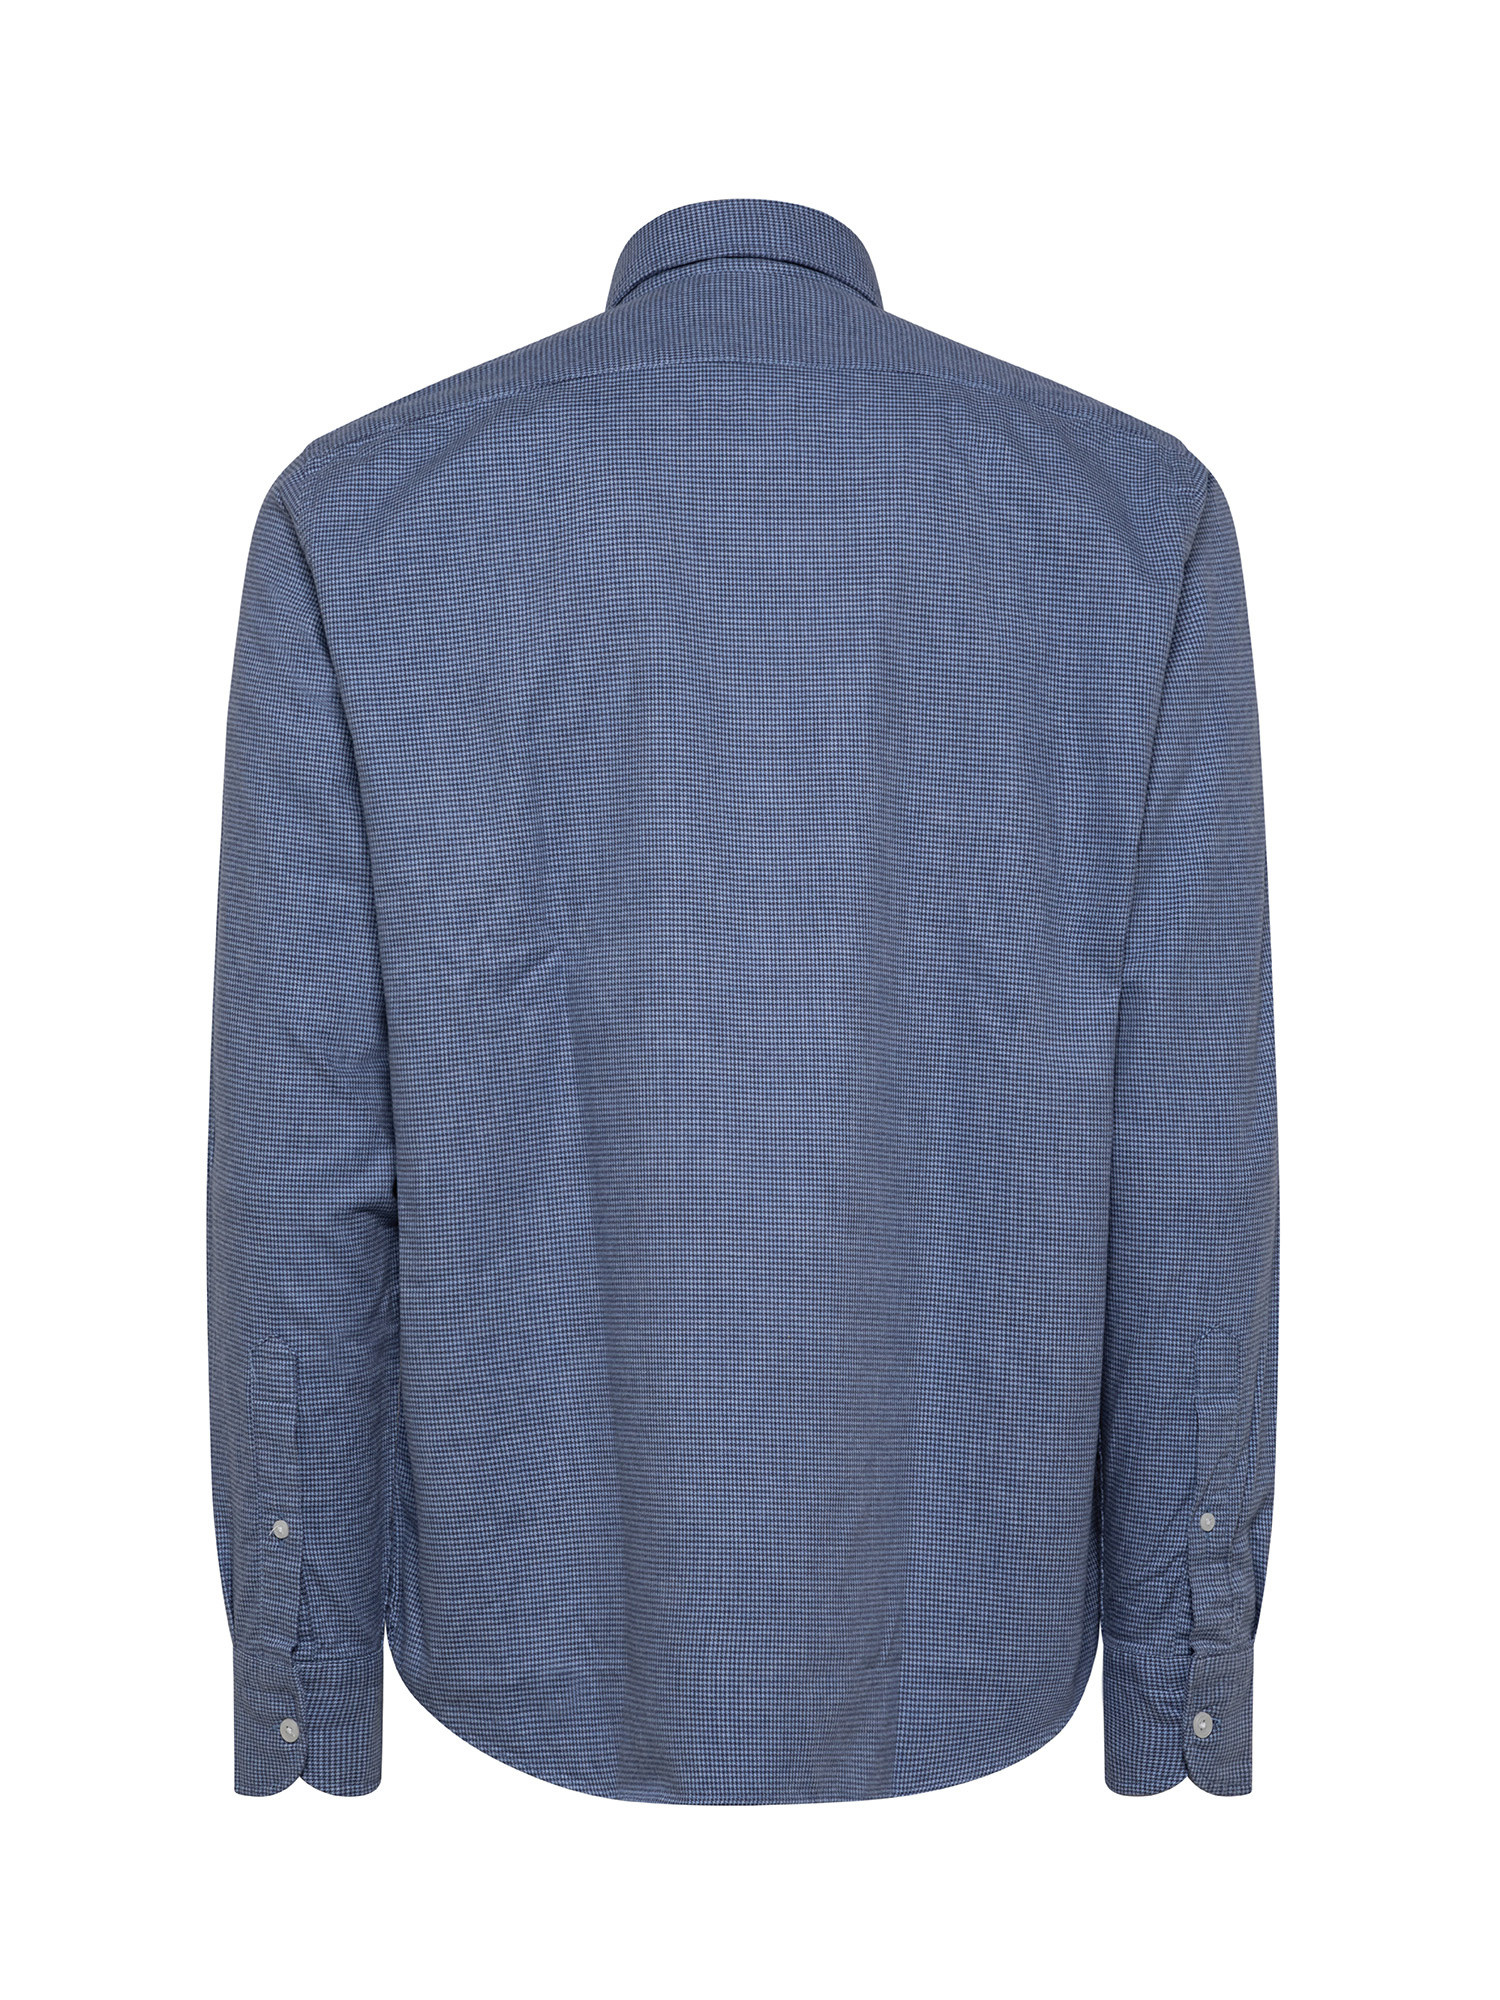 Camicia tailor fit in morbida flanella di cotone organico, Azzurro, large image number 1